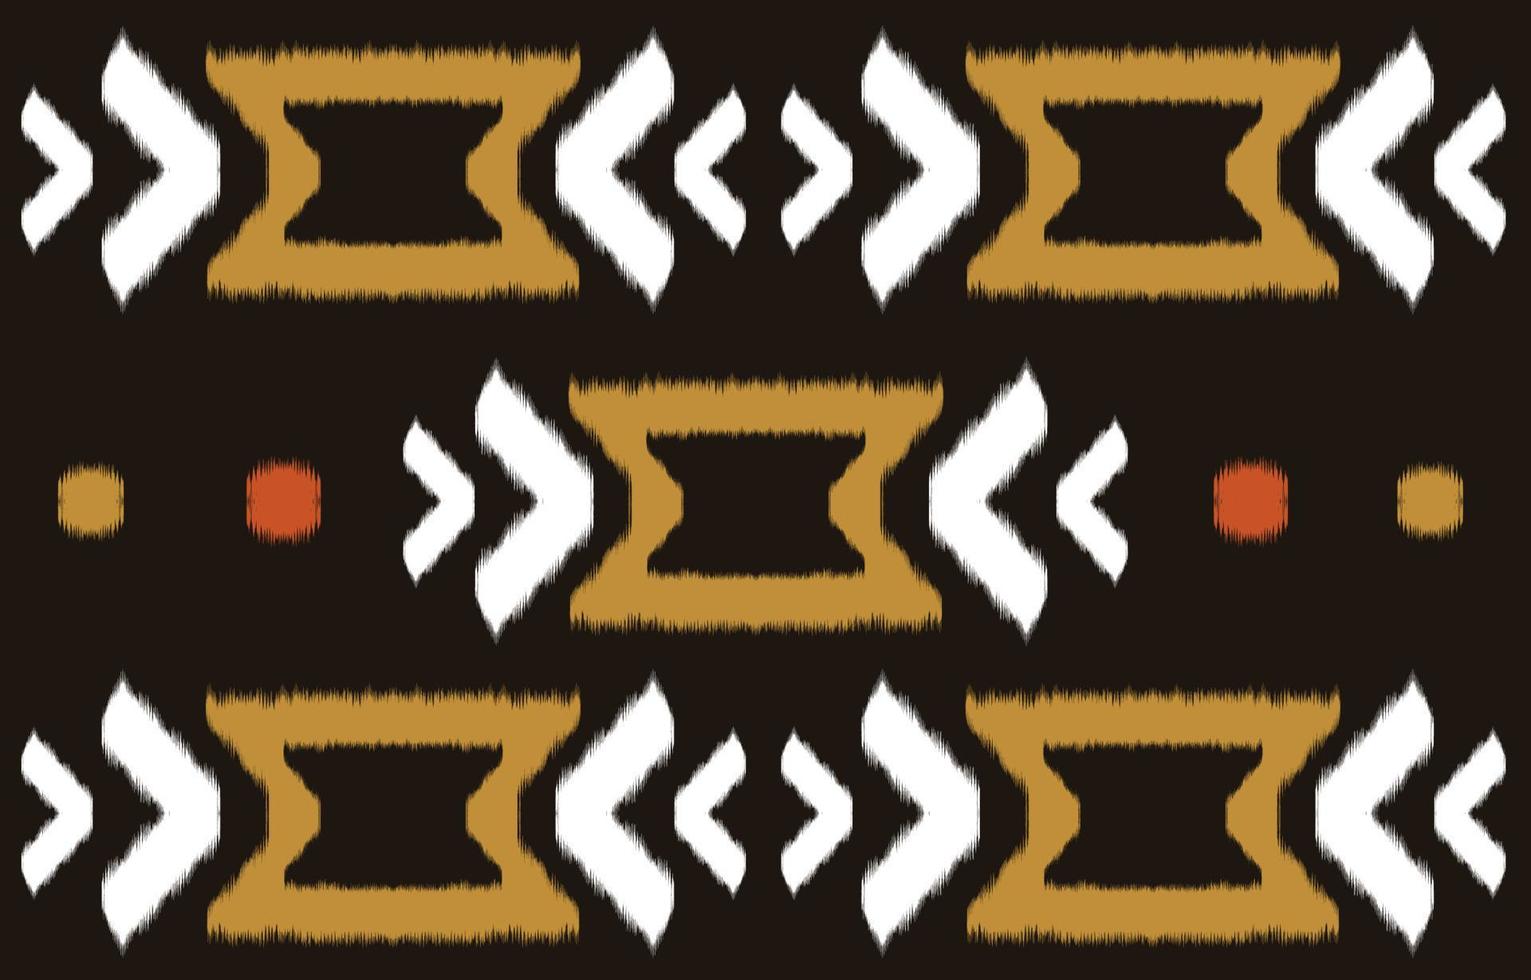 art abstrait ethnique ikat. motif harmonieux de broderie tribale, folklorique et de style mexicain. ornement d'art géométrique aztèque print.design pour tapis, papier peint, vêtements, emballage, tissu, couverture, textile vecteur